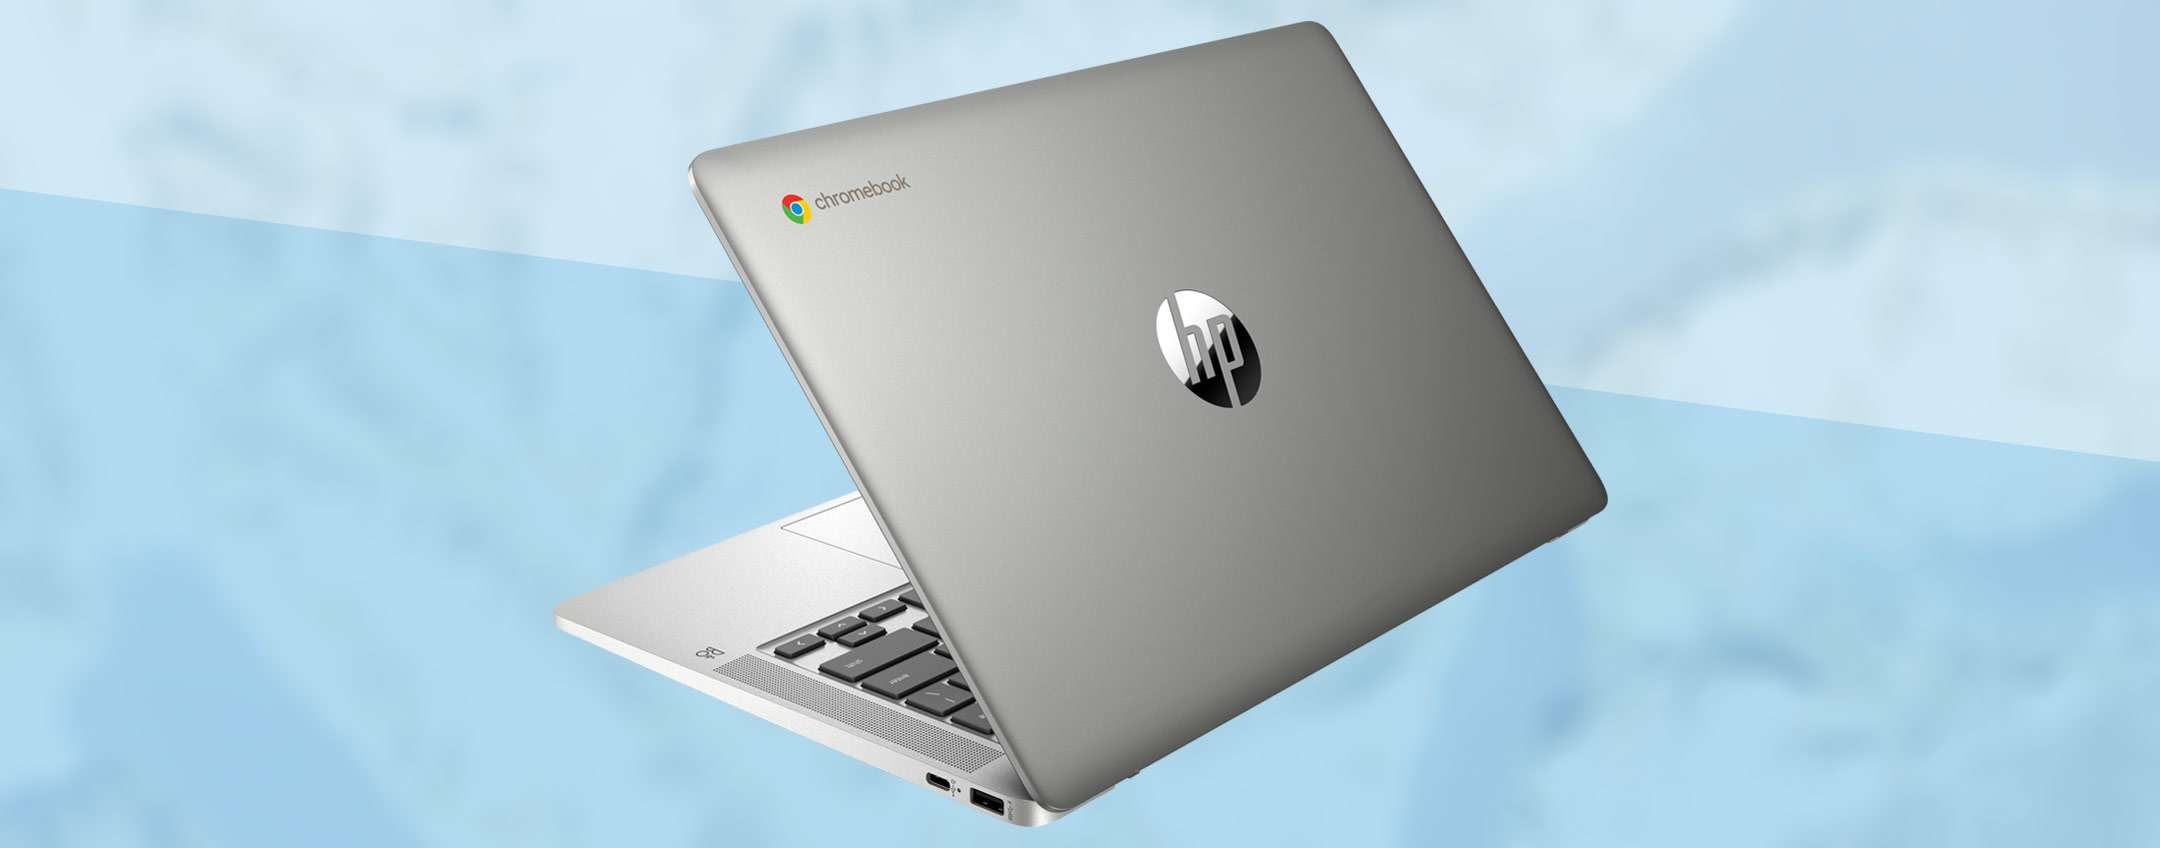 Il Chromebook di HP per la DaD su Amazon a PREZZO STRACCIATO